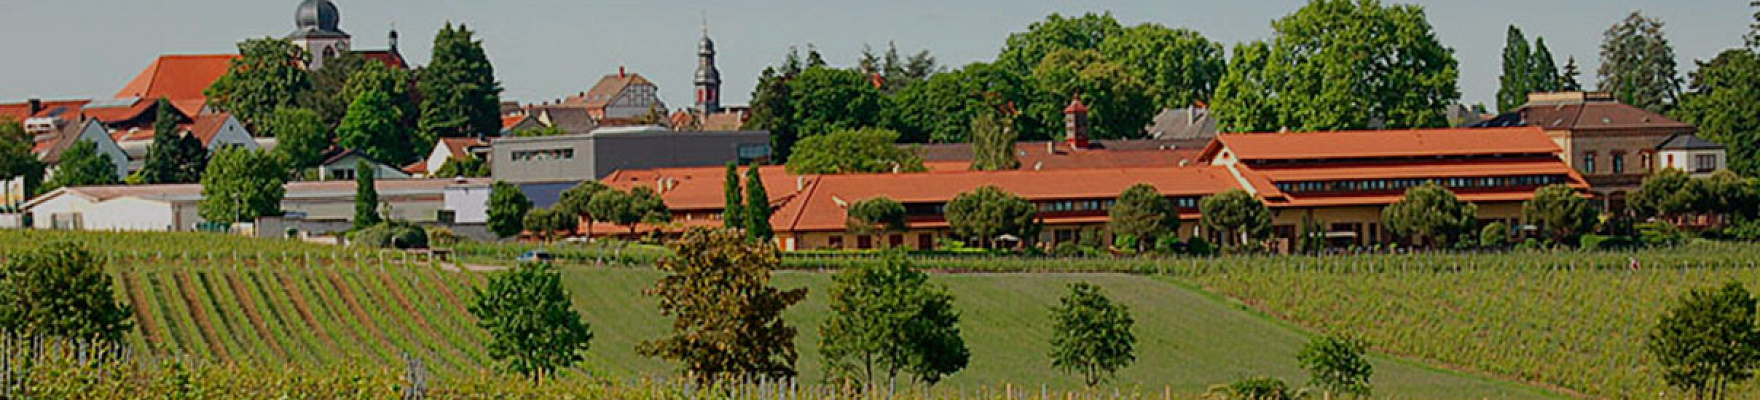 Weingut Villa Wolf